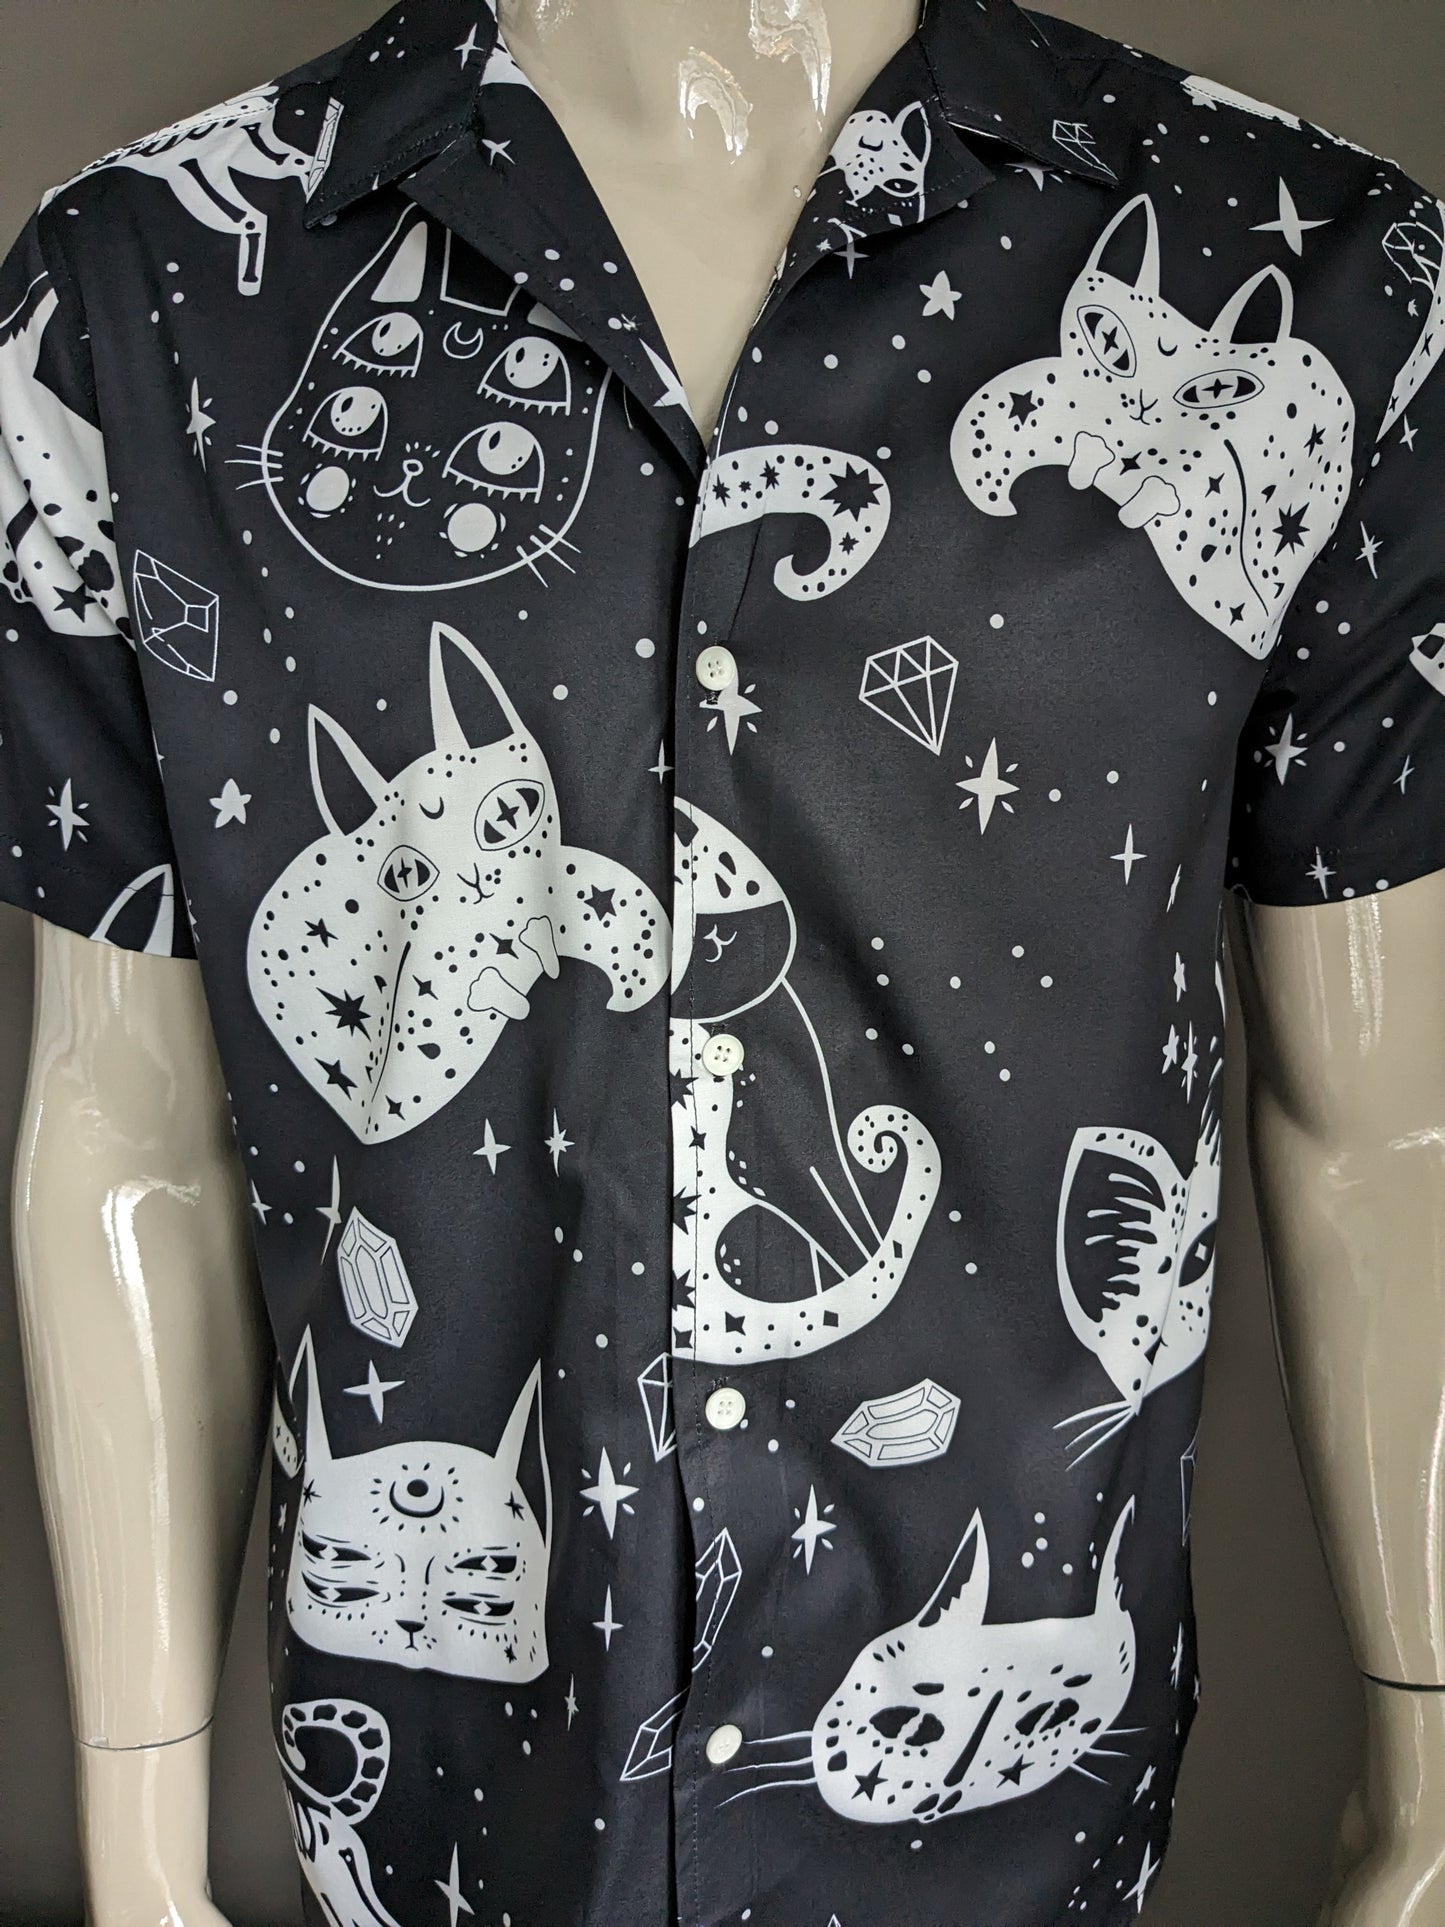 Brandloses Shirt Kurzarm. Galaxy -Katzen drucken. Schwarz und weiß. Größe L.